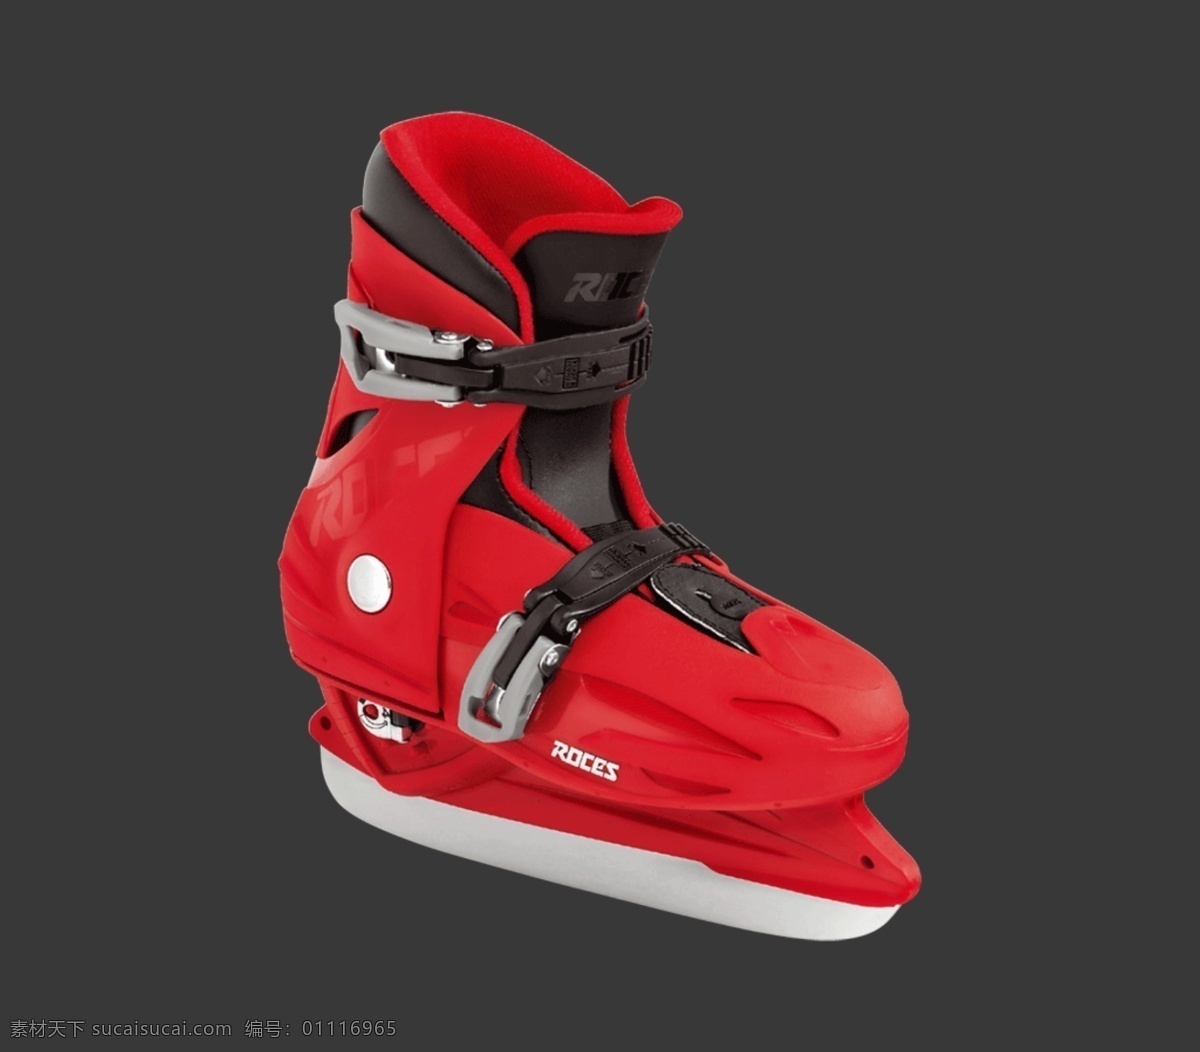 红色 儿童 冰鞋 免 抠 透明 红色儿童冰鞋 元素 图形 冰鞋海报图片 冰鞋广告素材 冰鞋海报图